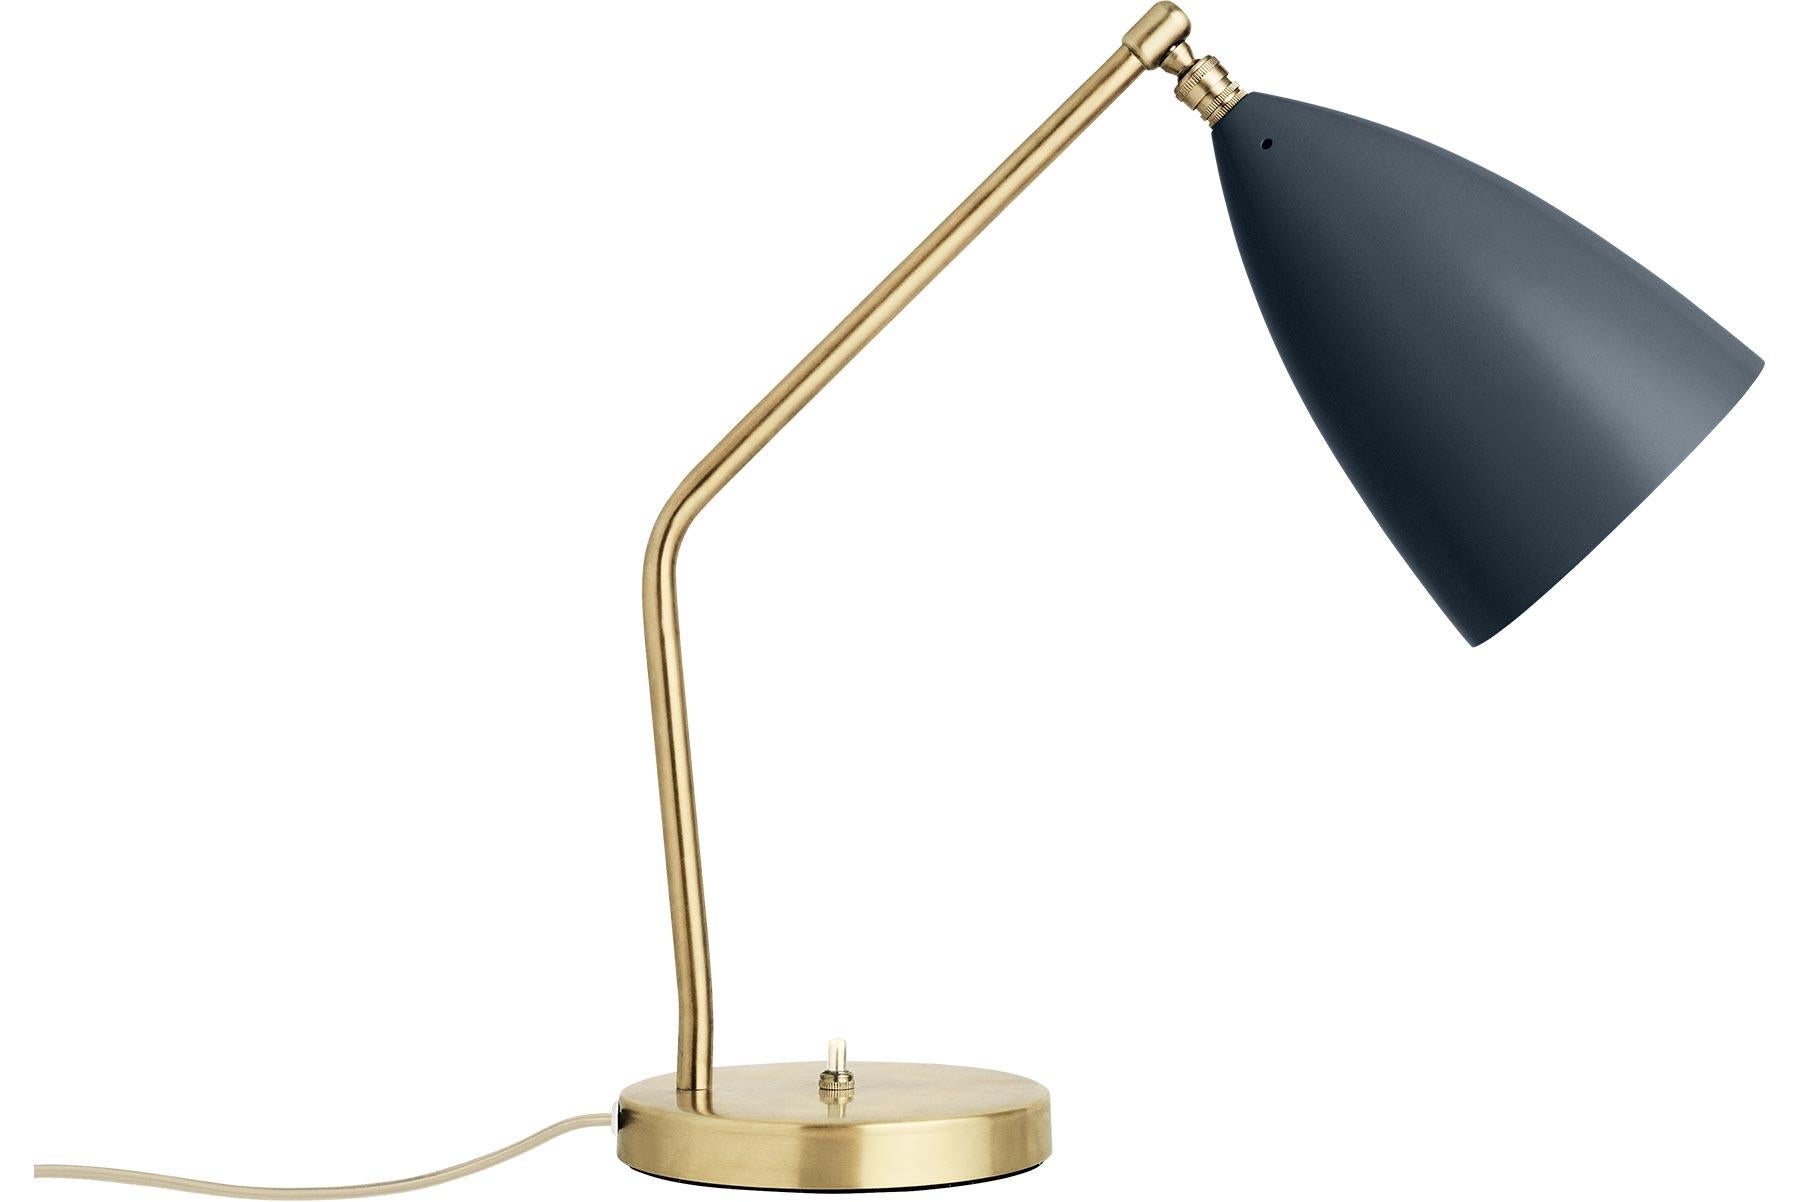 Danish Greta Grossman Grasshopper Table Lamp, Black Glossy For Sale